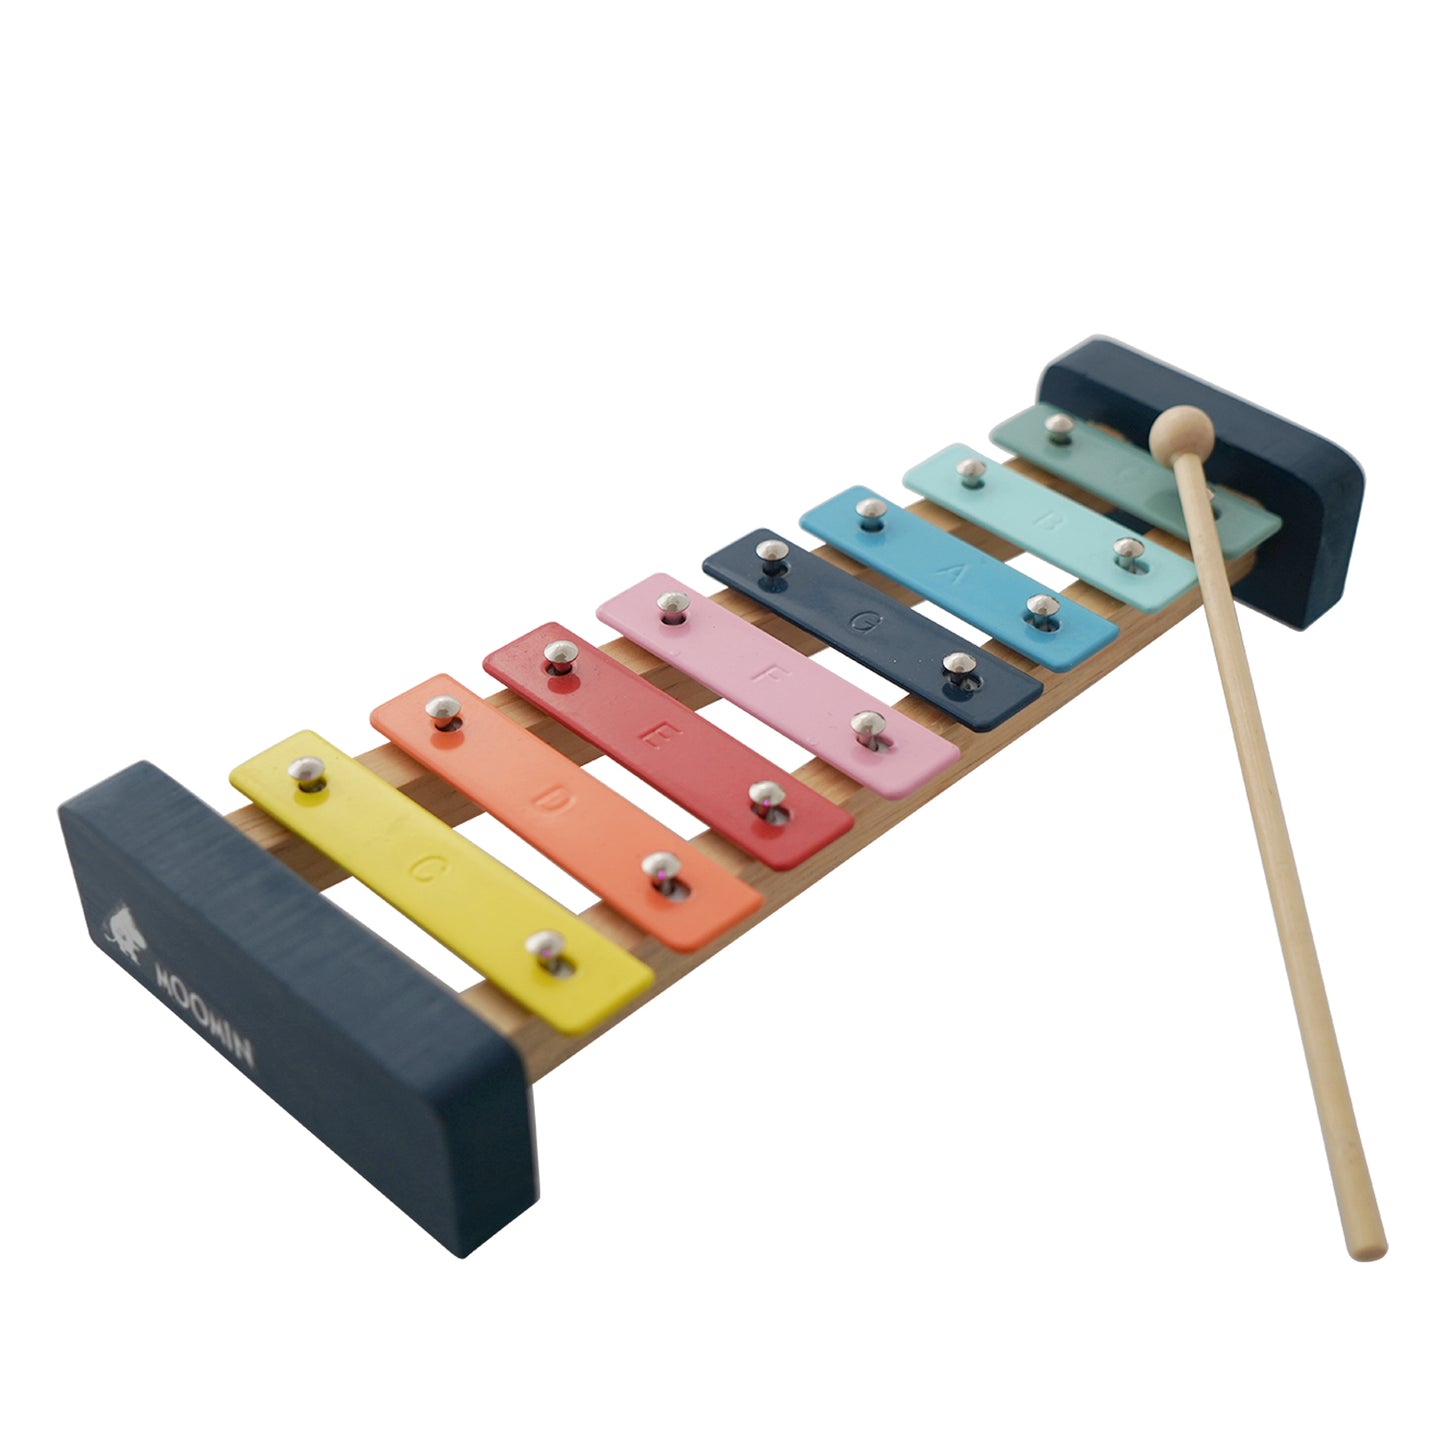 Moomin Xylophone